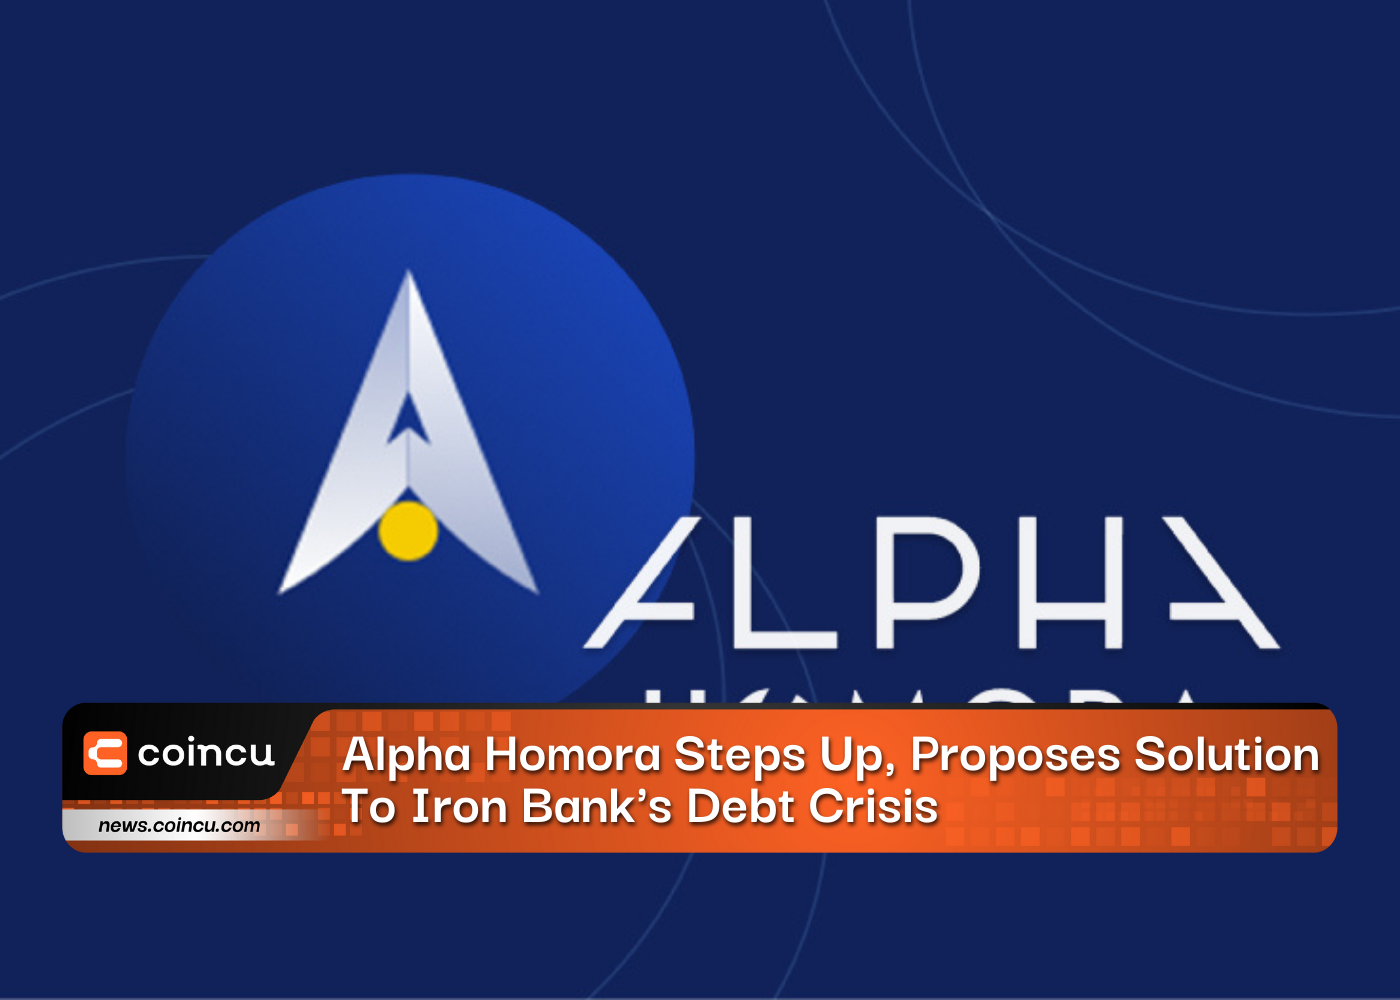 Alpha Homora intensifica propõe solução